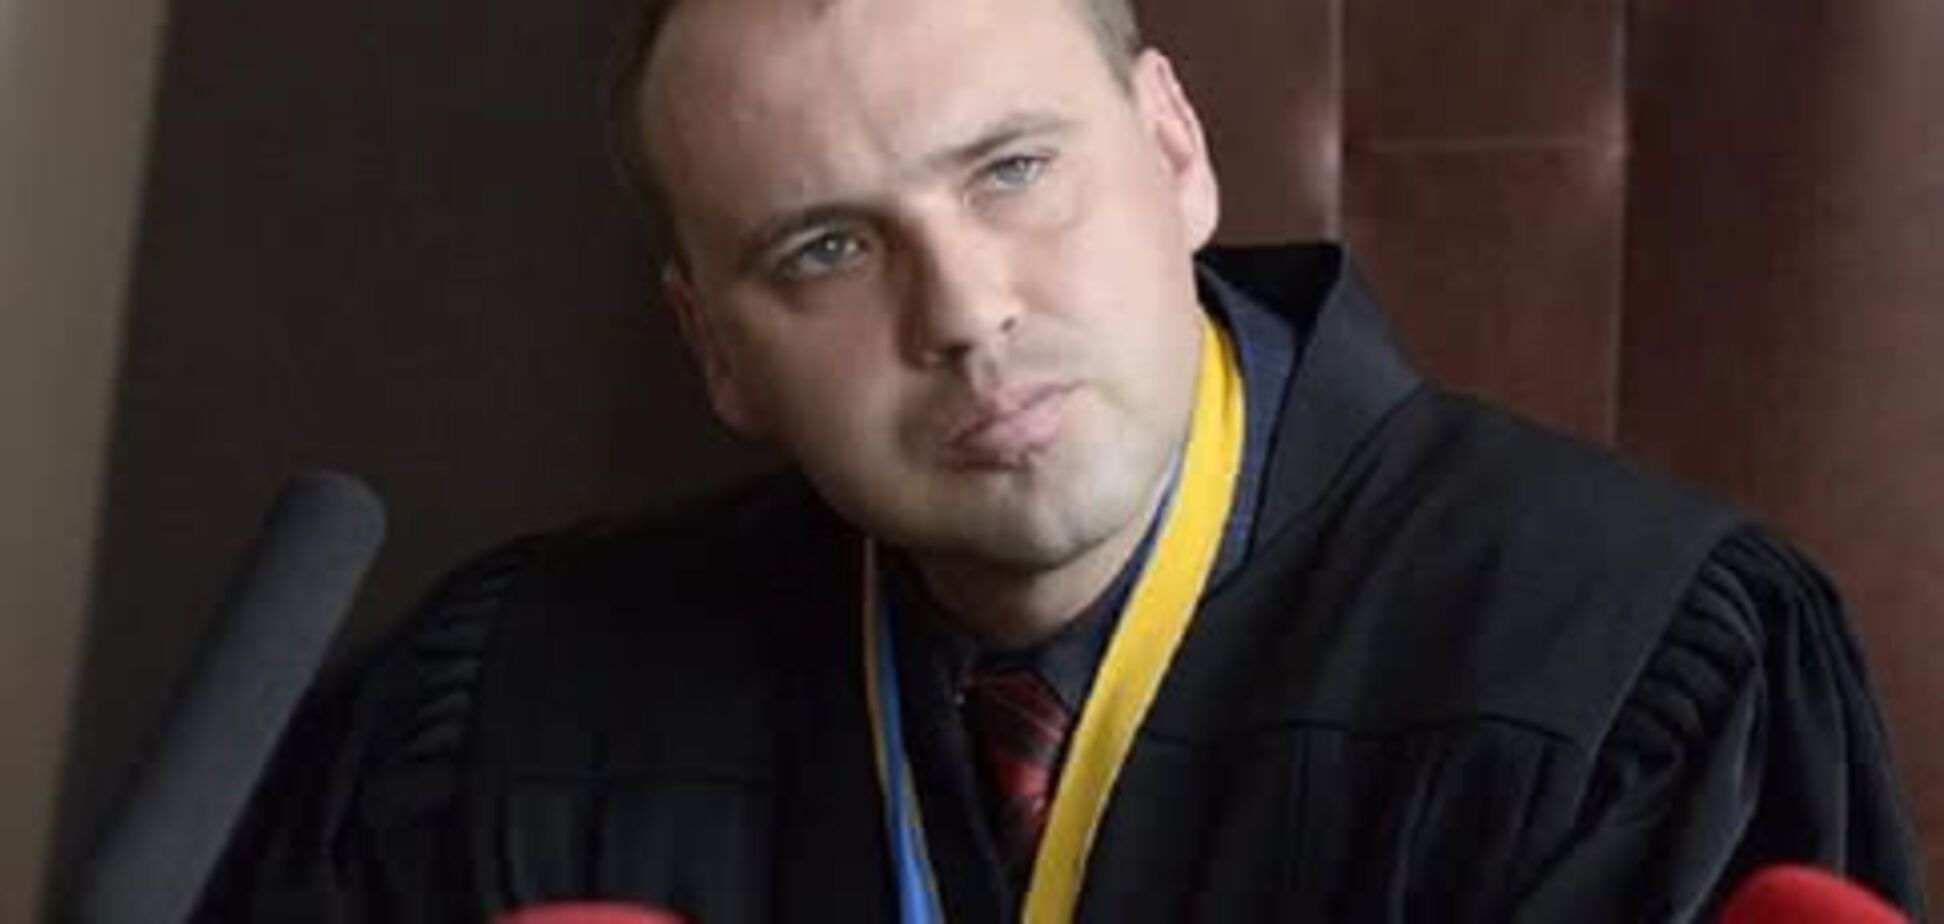 Загадочная смерть судьи Бобровника: гибель расследуют как убийство